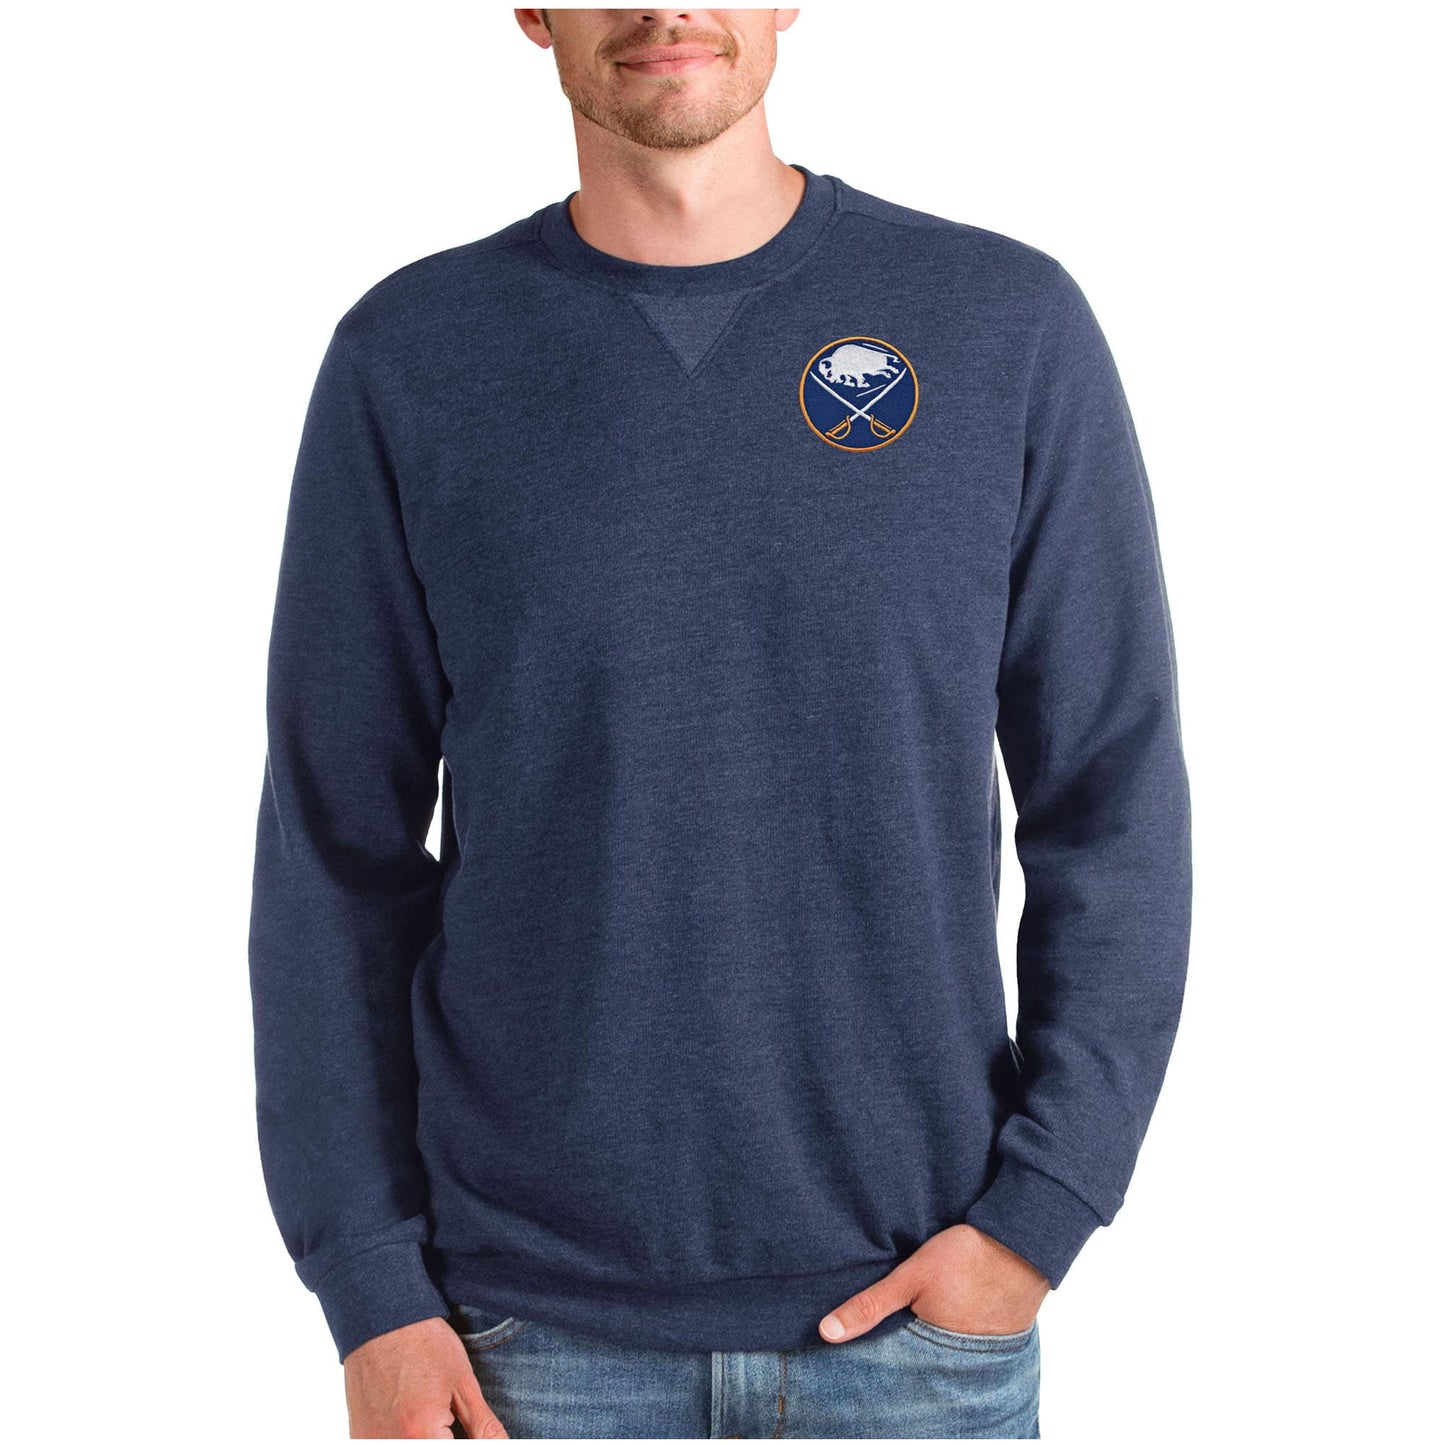 Men's Antigua Heathered Navy Buffalo Sabres Reward Crewneck Pullover Sweatshirt